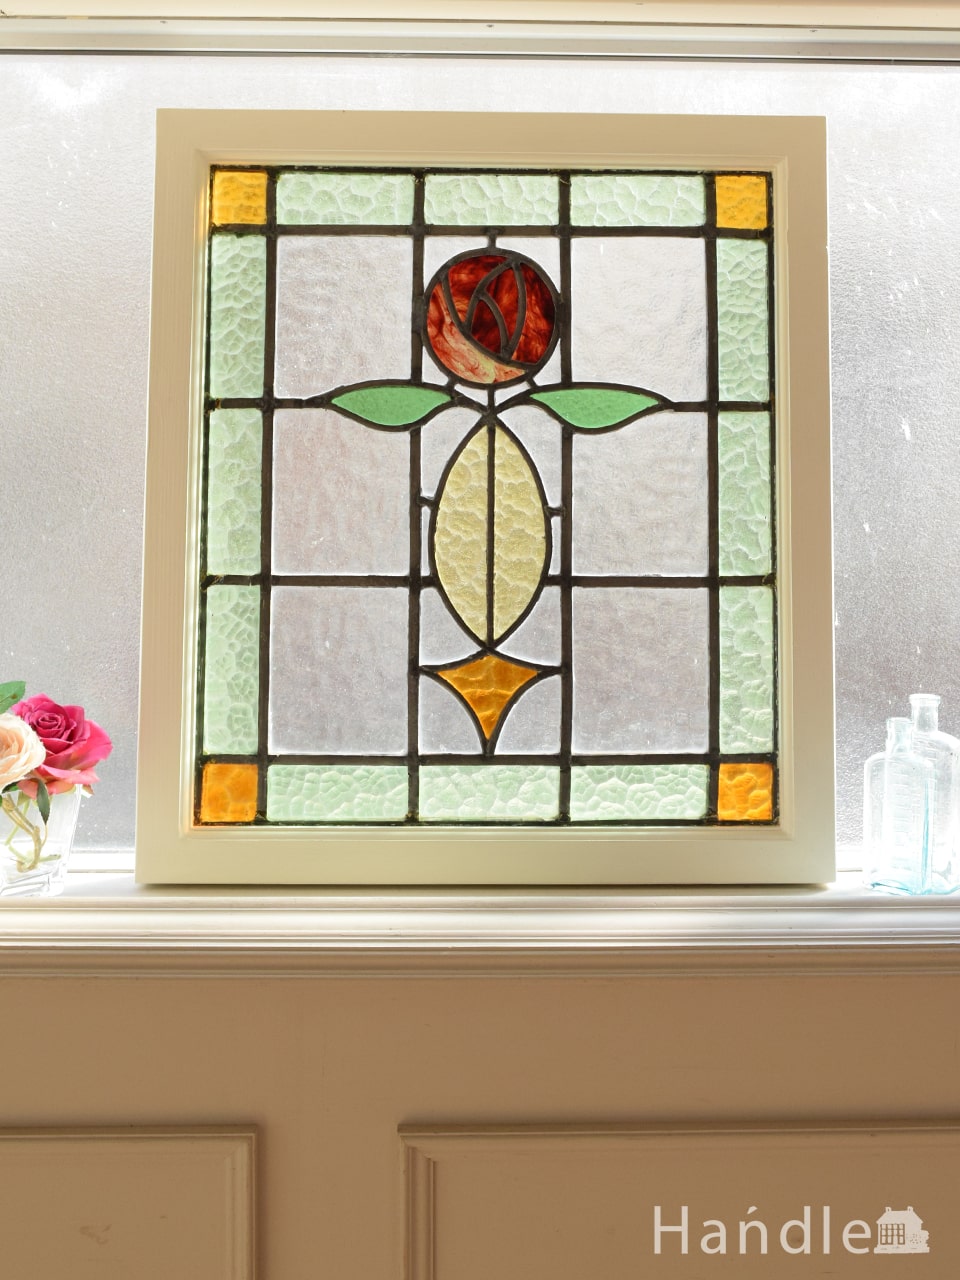 英国アンティークのステンドグラス、曲線で描かれた葉っぱとバラ模様のステンドグラス